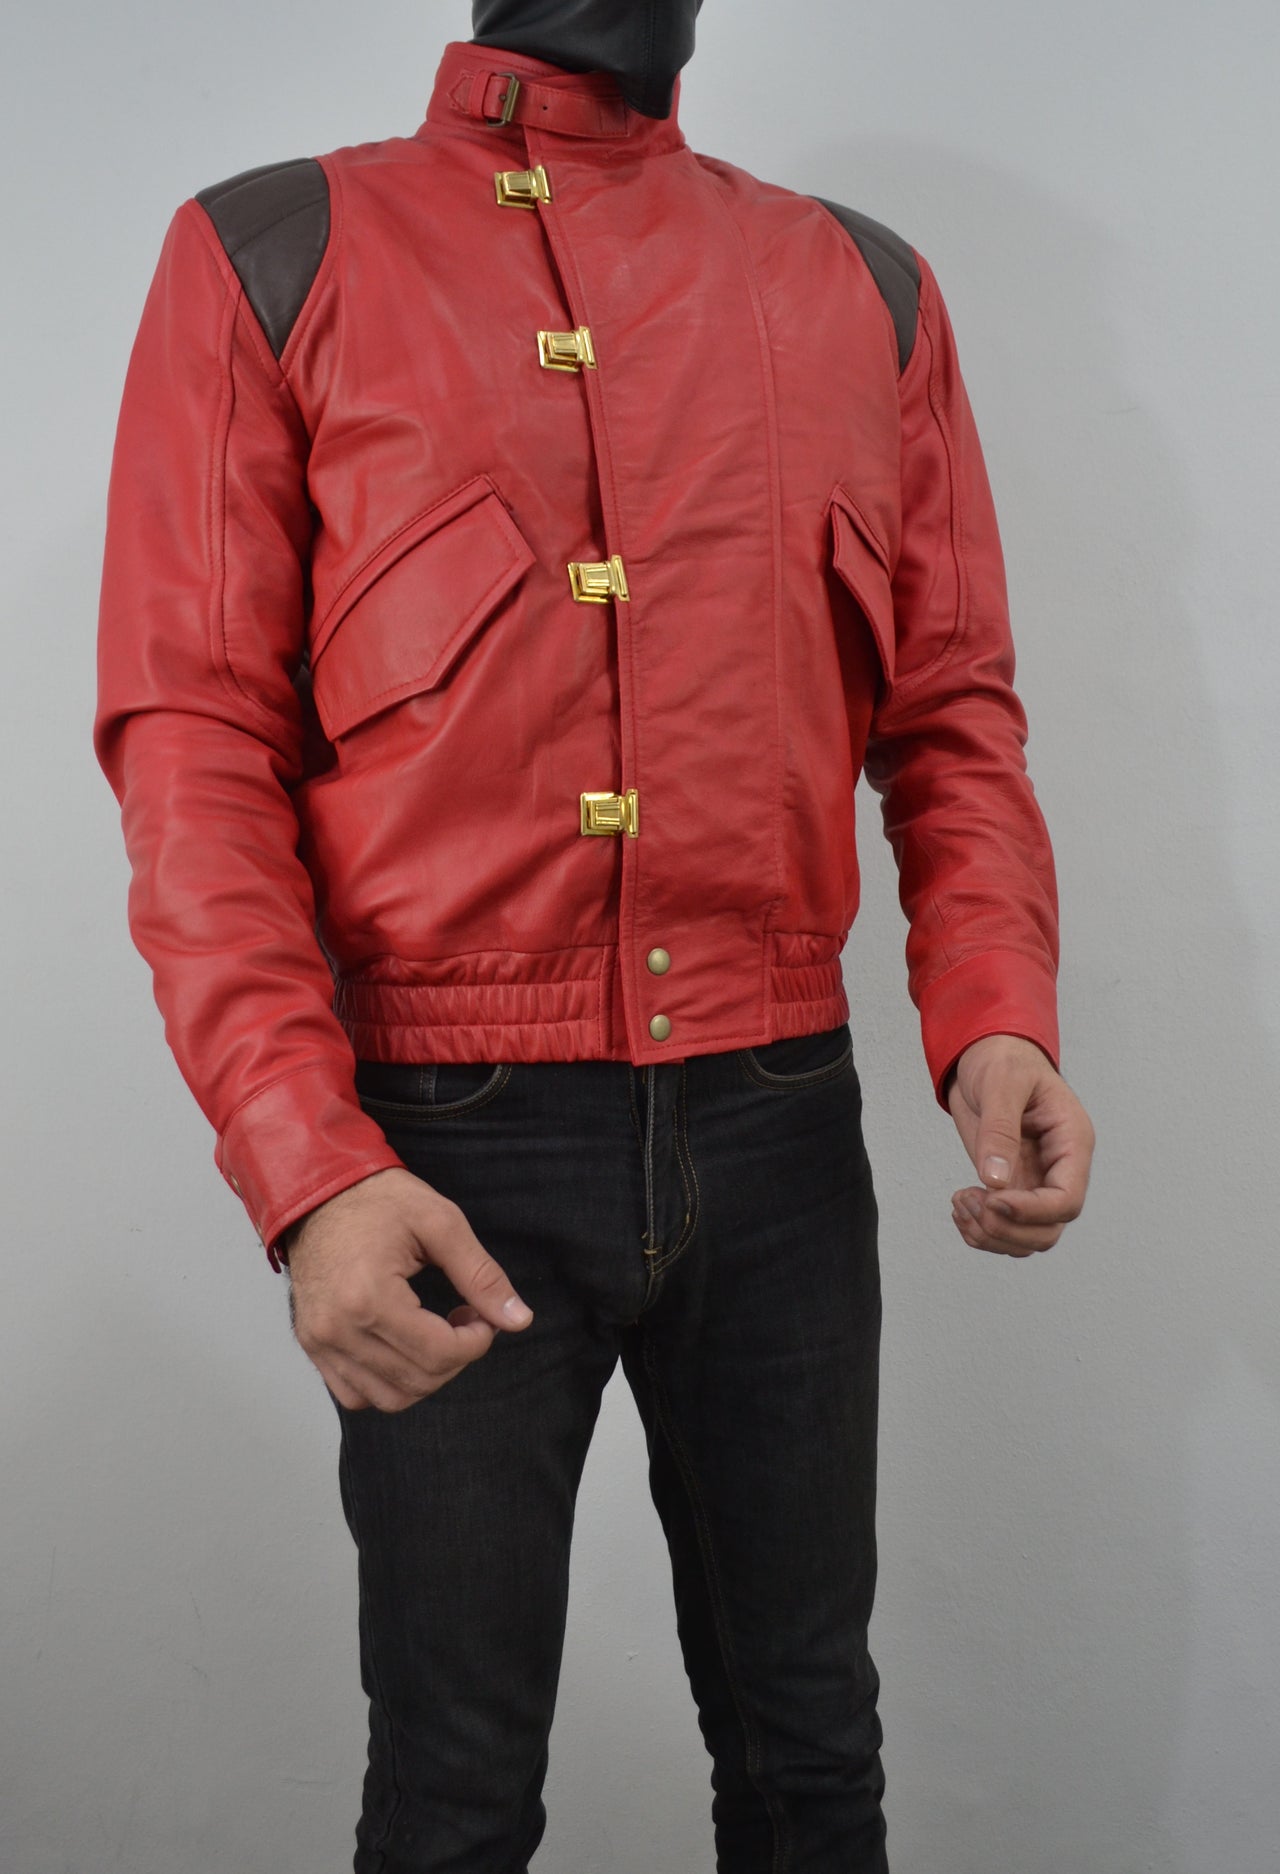 Akira Kaneda Anime Pill Capsule Red Motorcycle Jacket Leather Jacket